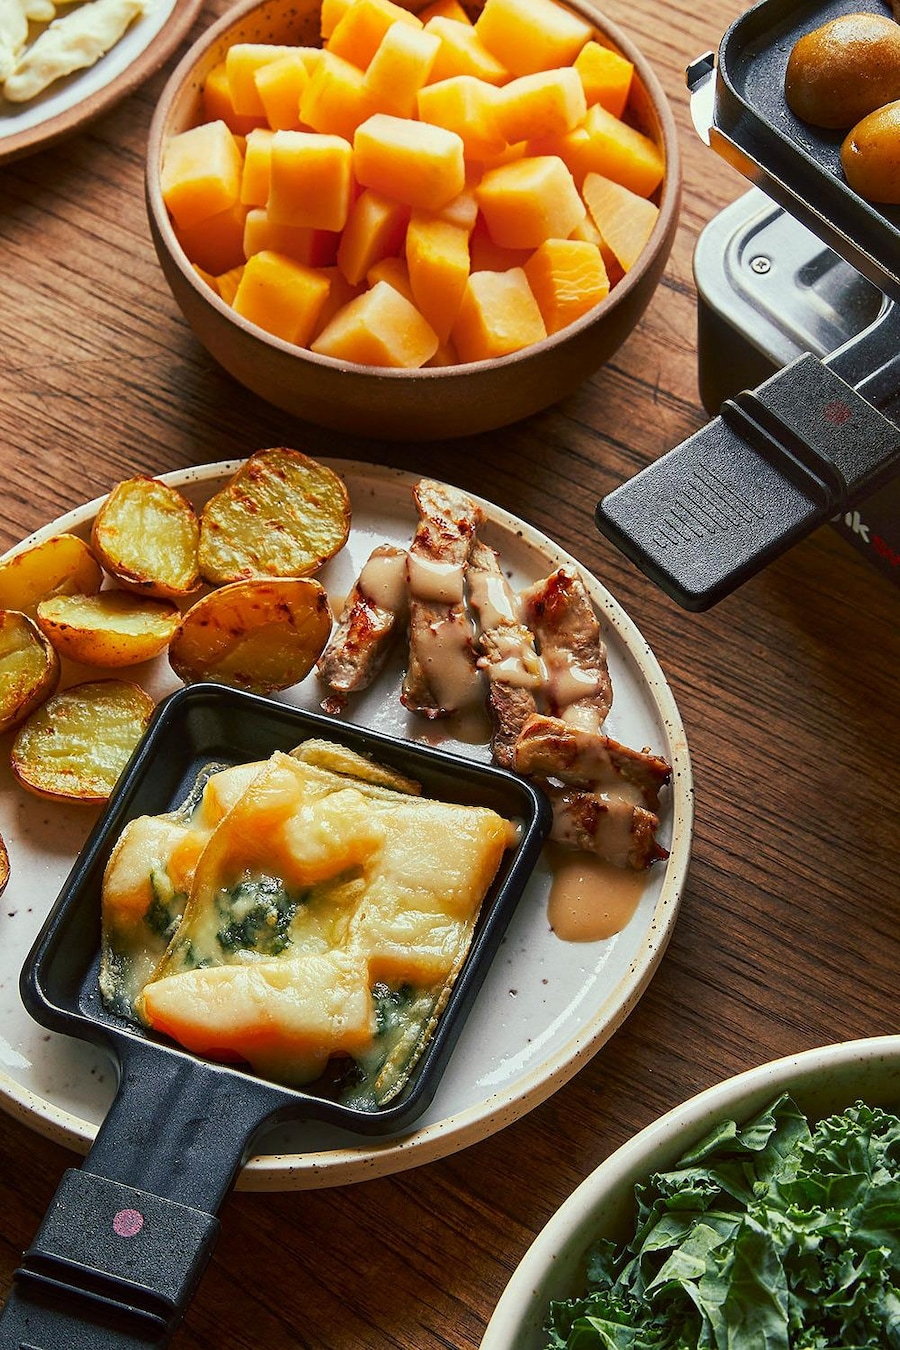 Une assiette avec des patates grillées, des petits morceaux de porc cuit et une coupelle à raclette remplie de kale et de rutabaga gratinés.